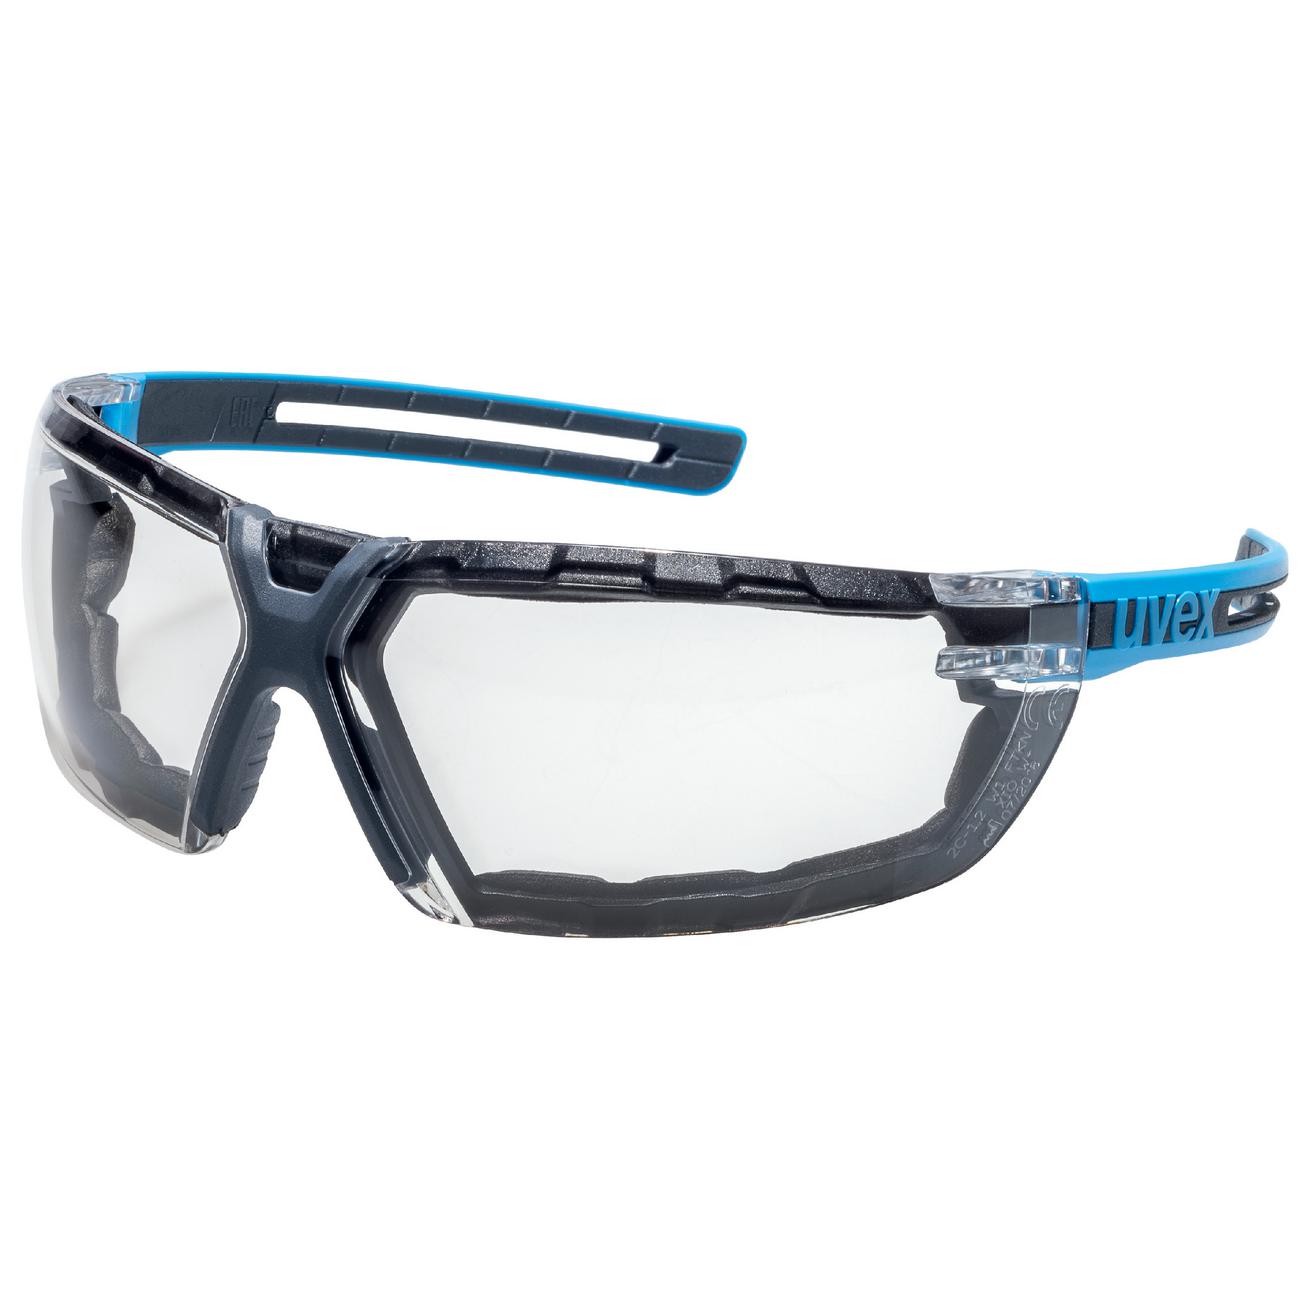 Brýle uvex x-fit pro Kód produktu: 9199680, Provedení zorníku: guard, PC čirý; 2C-1,2, SV. excellence